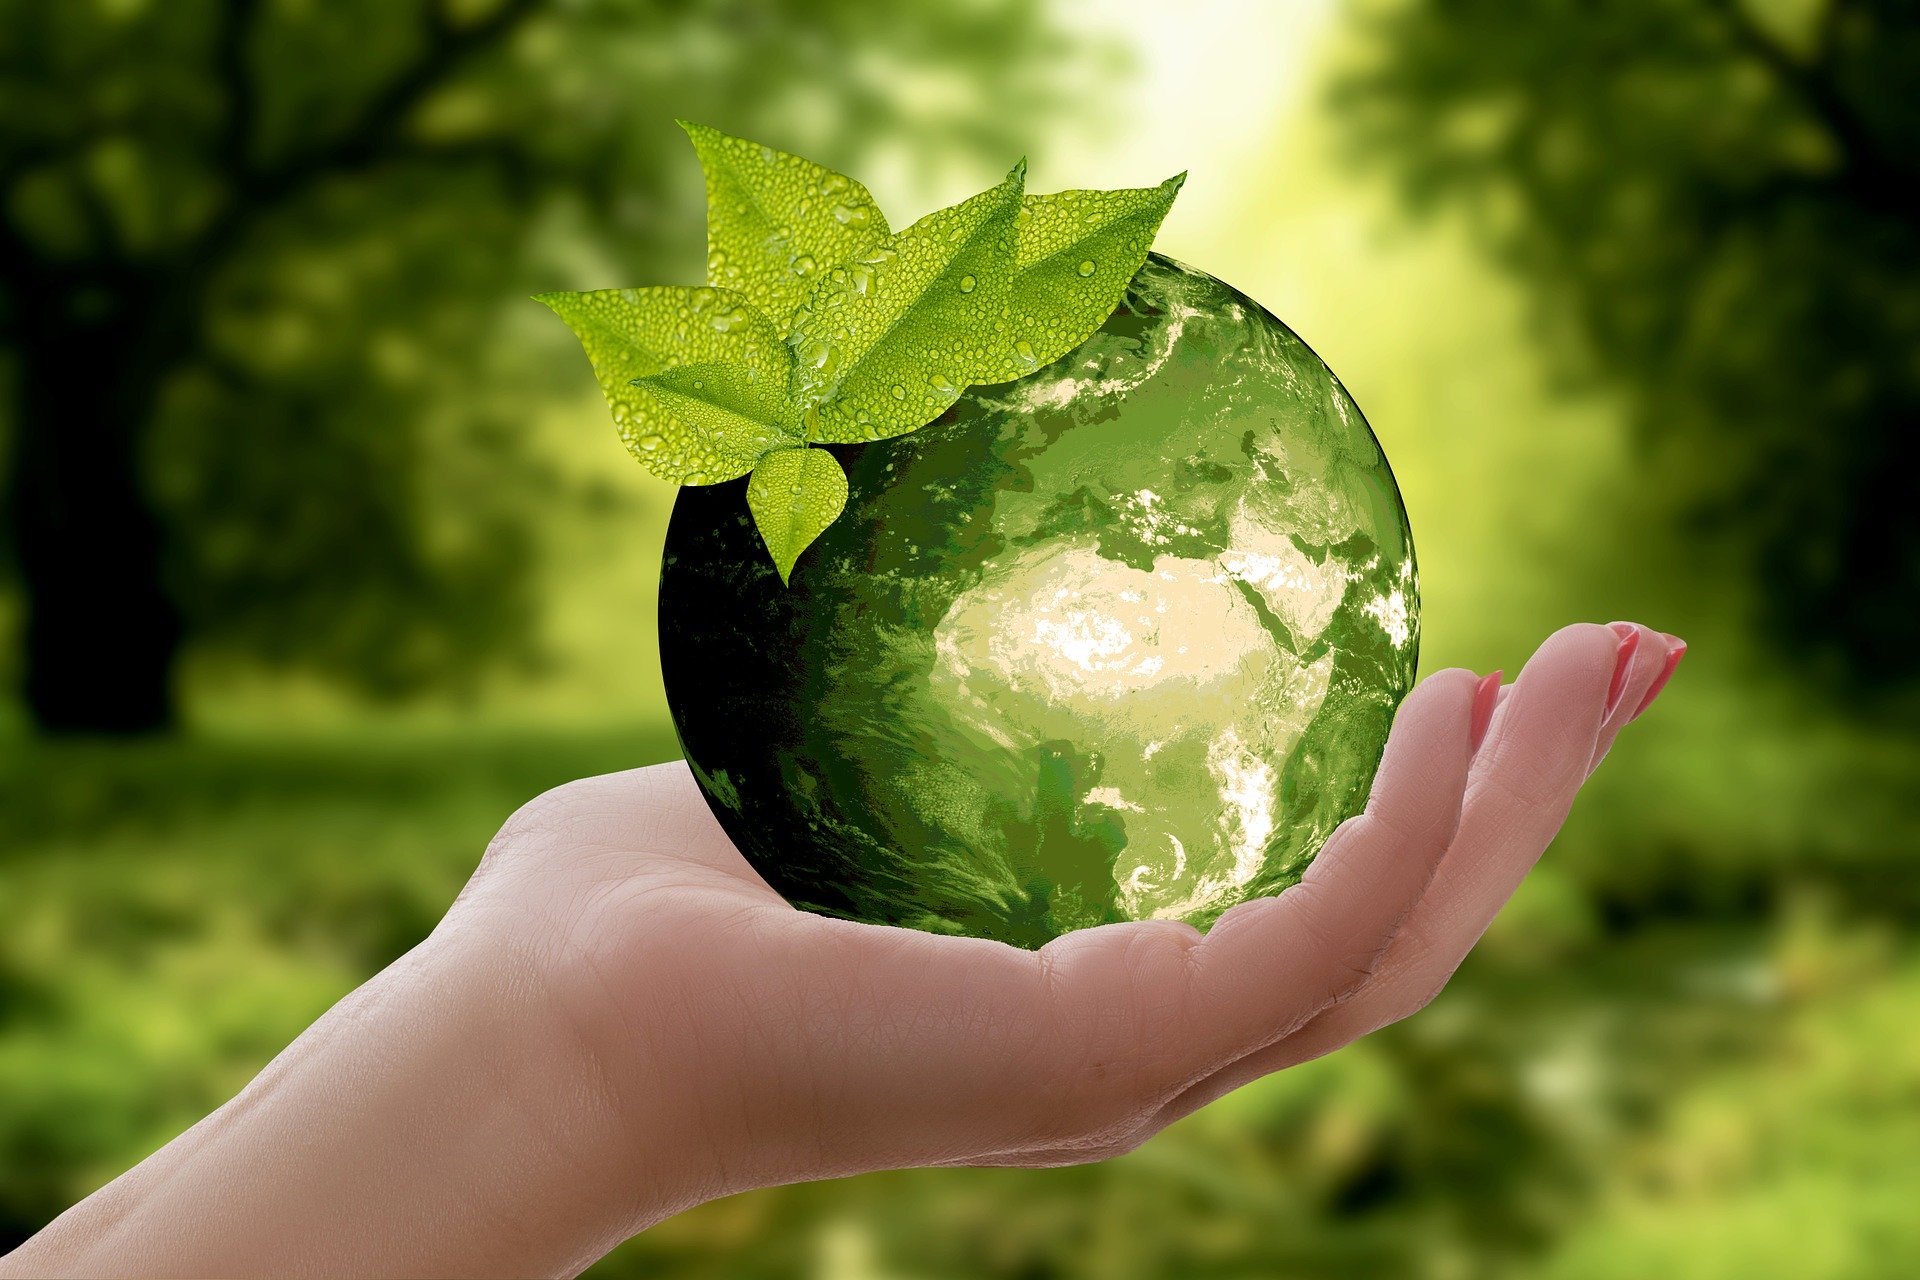 Das Bild zeigt eine Hand mit einer grün eingefärbten Erdkugel darauf vor unscharfem grünen Hintergrund.